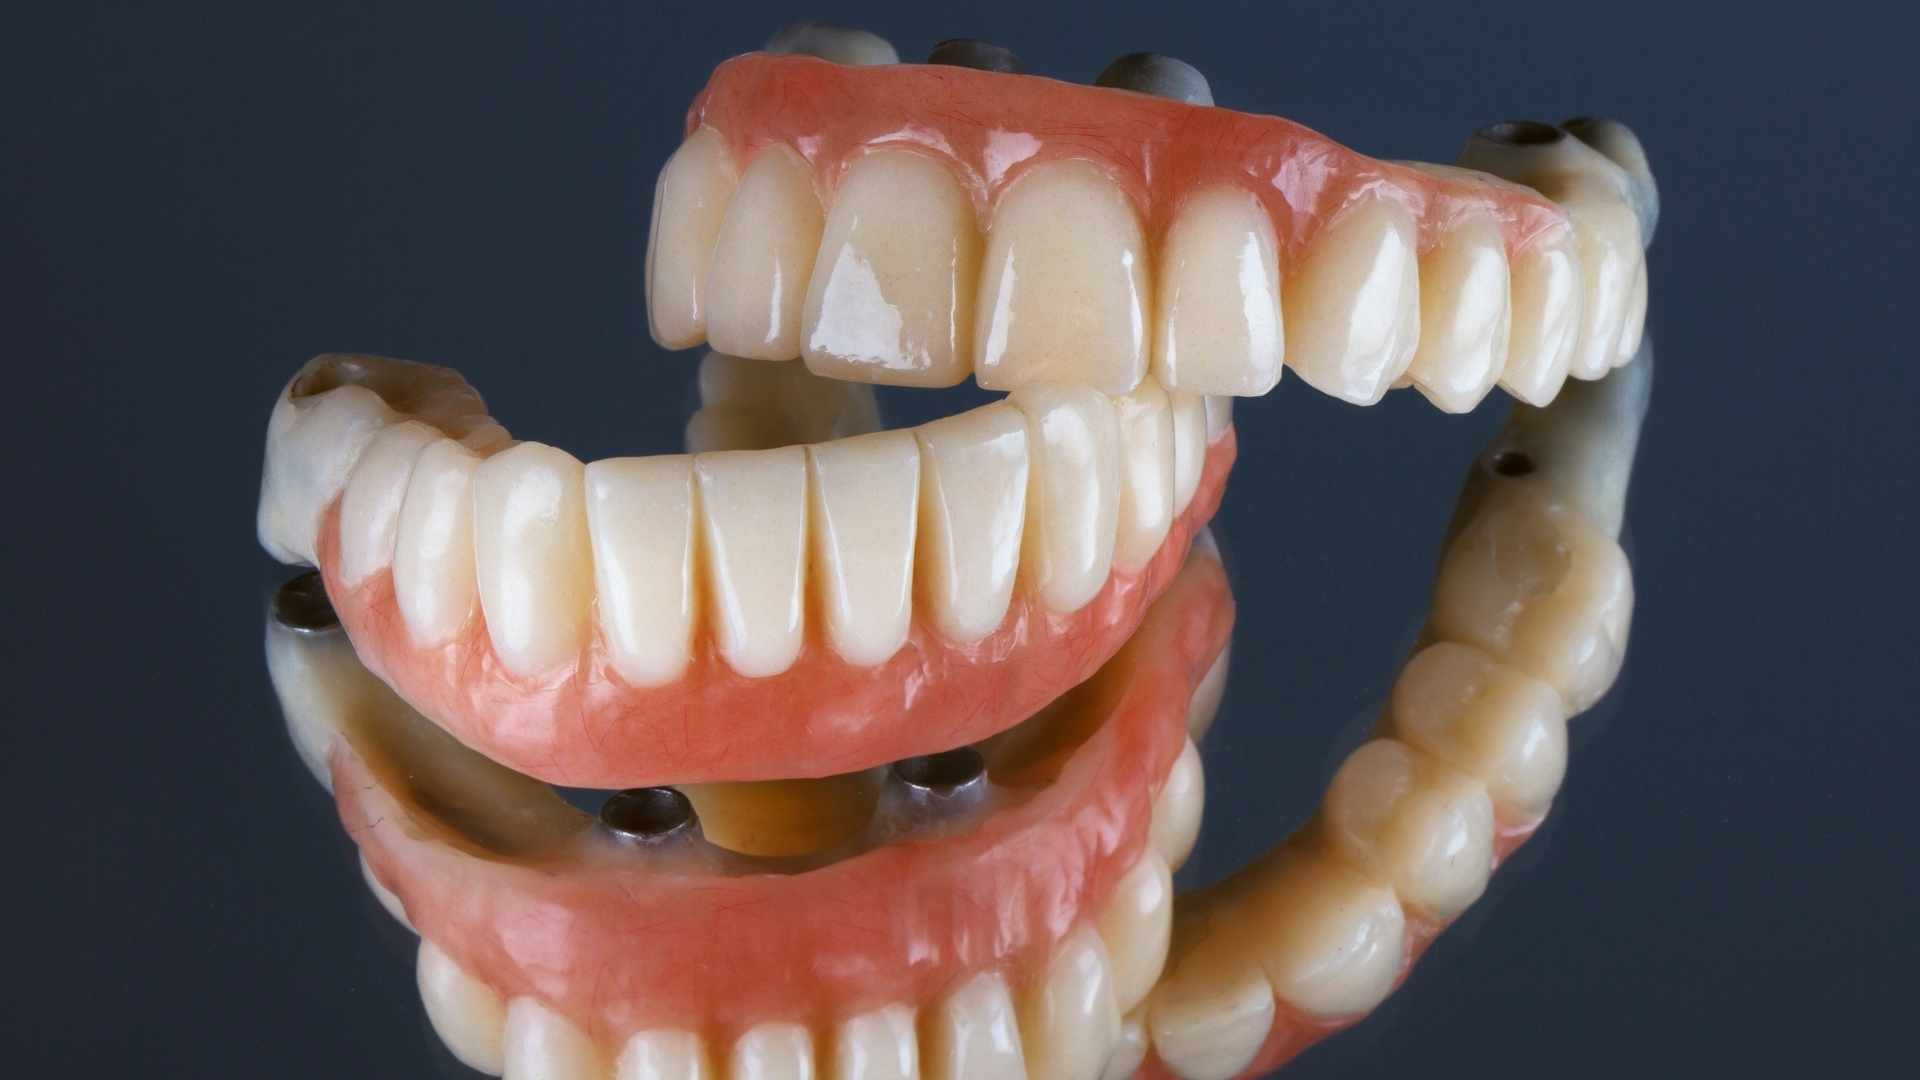 دندان پروتز متحرک (دندان مصنوعی کامل) (دو فک) دکتر کاملیا علیجانی در تهران 1